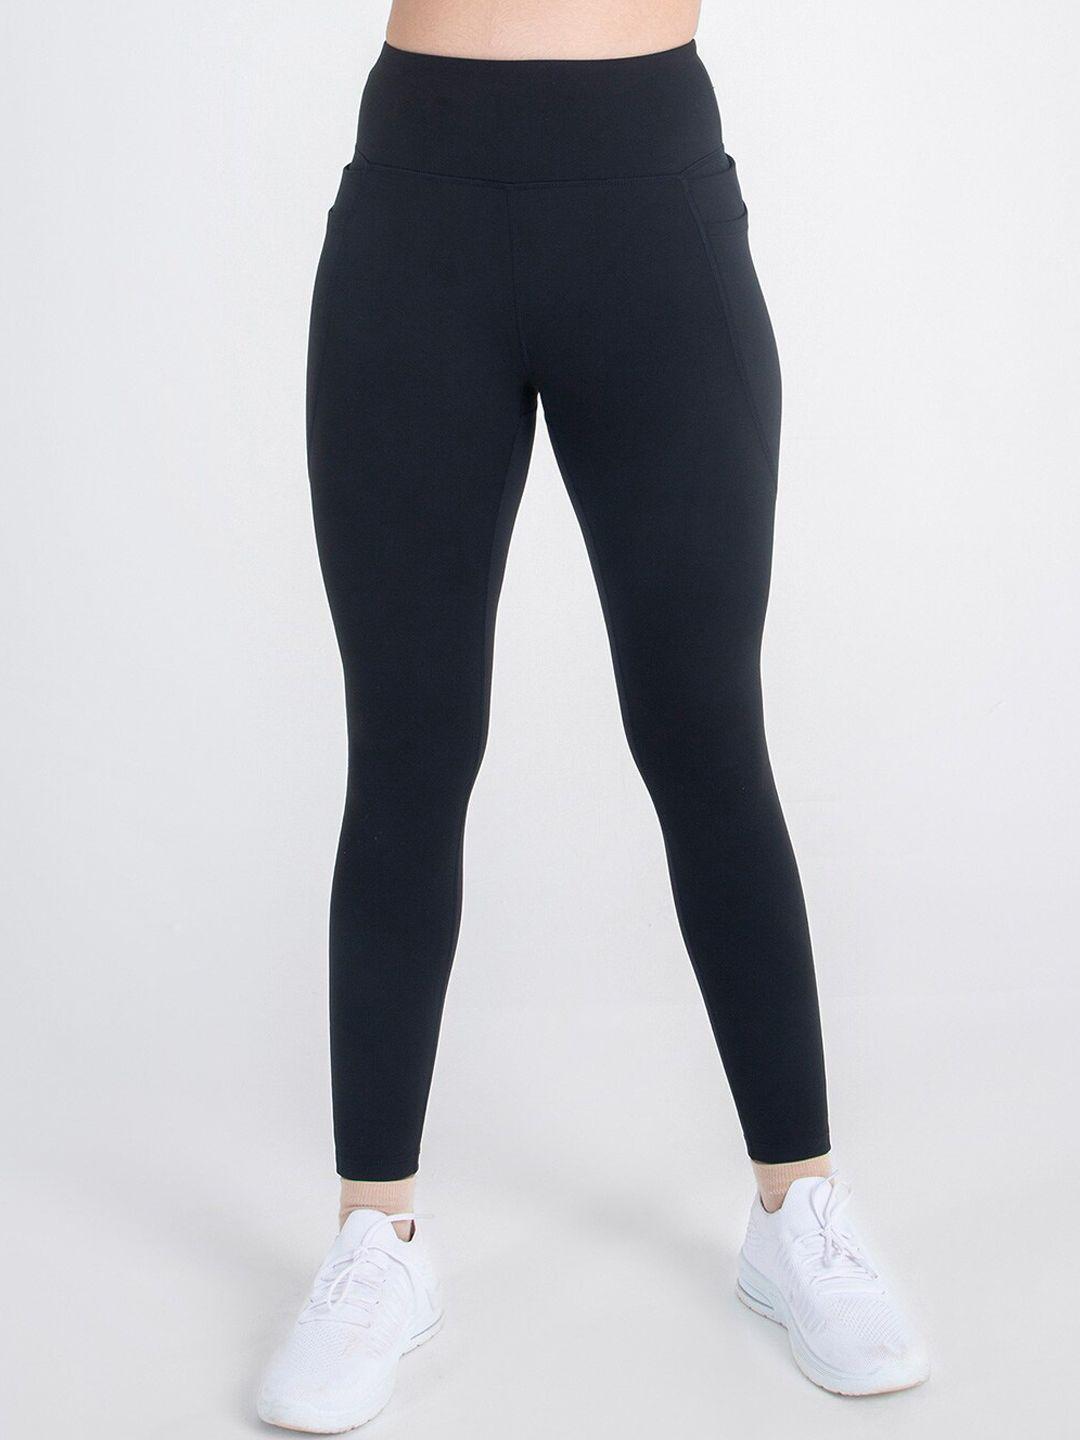 blissclub women black high waist the ultimate pocket goals leggings